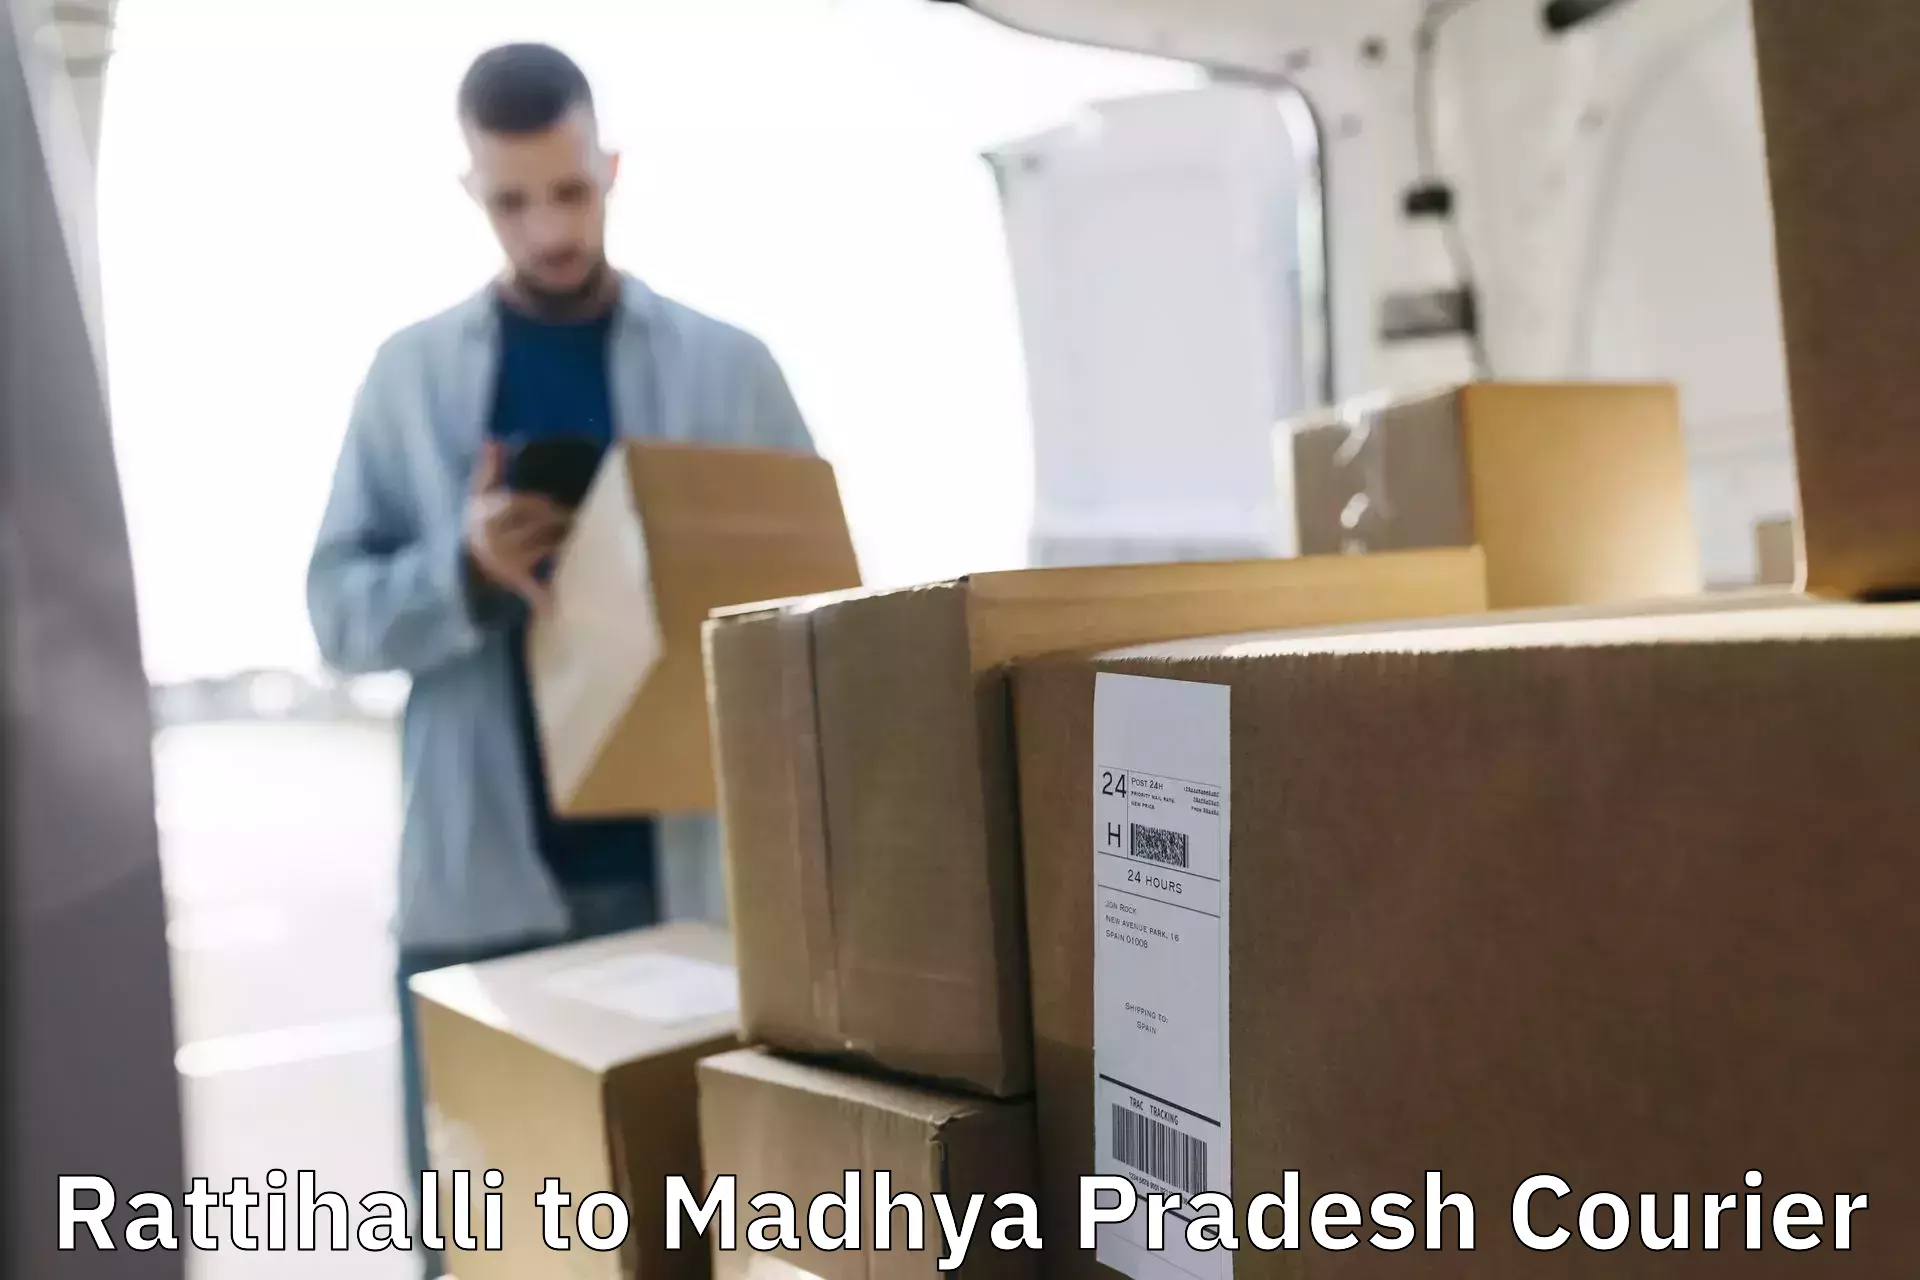 24/7 courier service Rattihalli to Madhya Pradesh